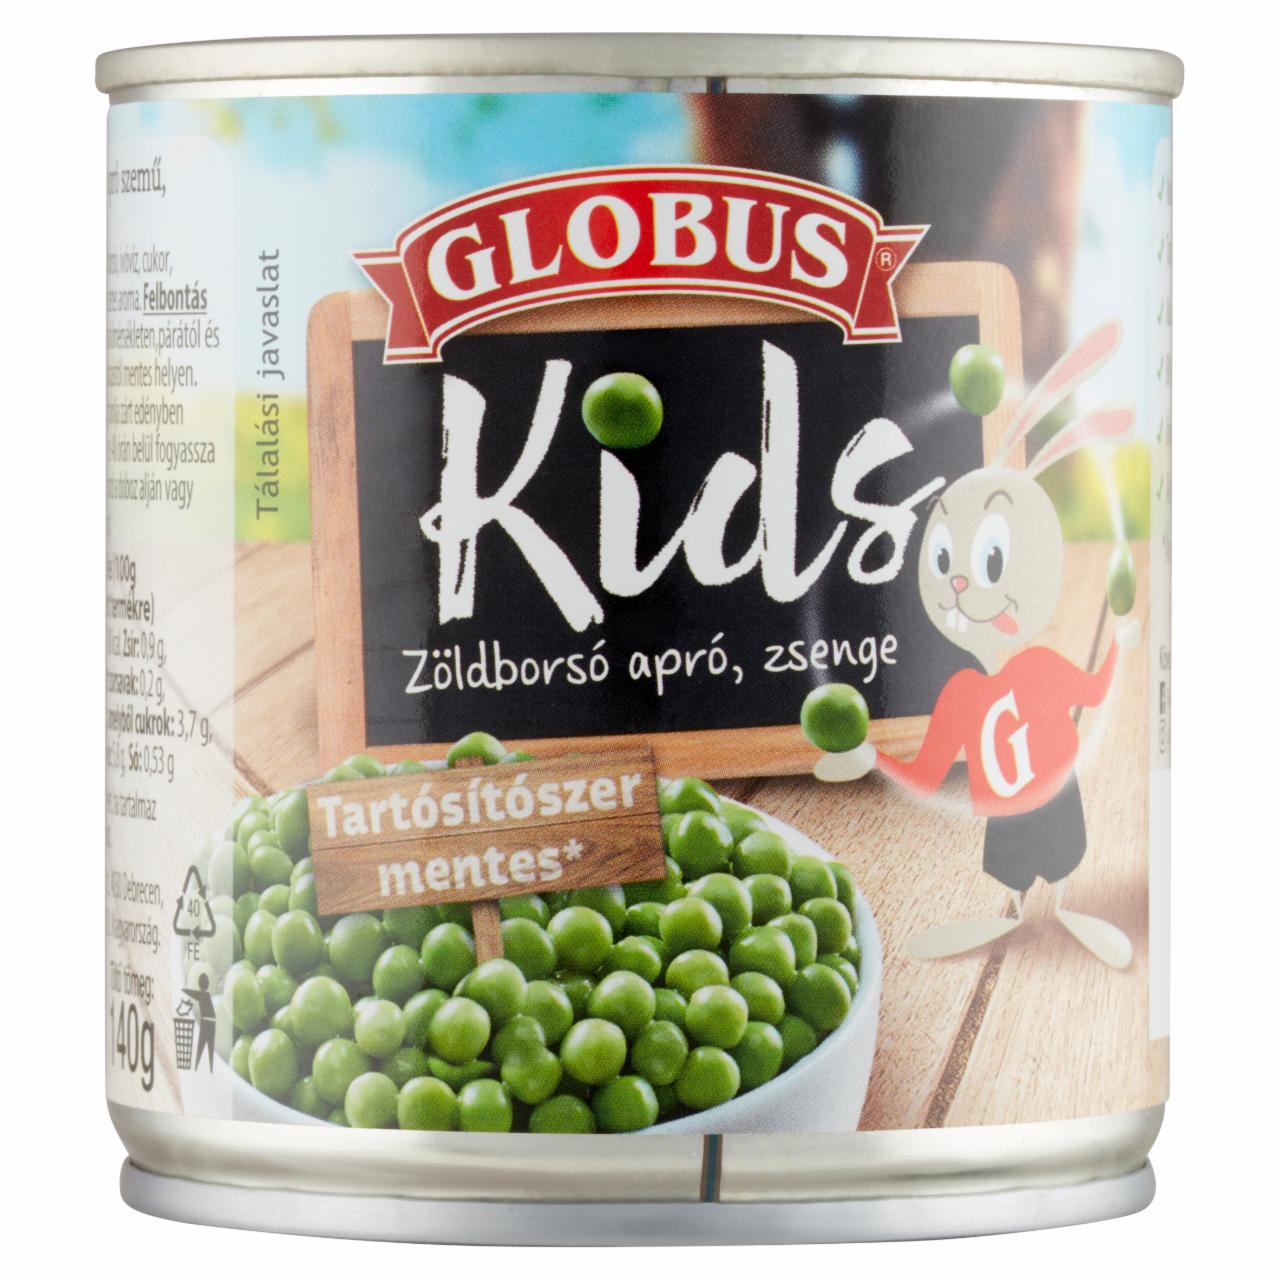 Képek - Globus Kids apró, zsenge zöldborsó 200 g